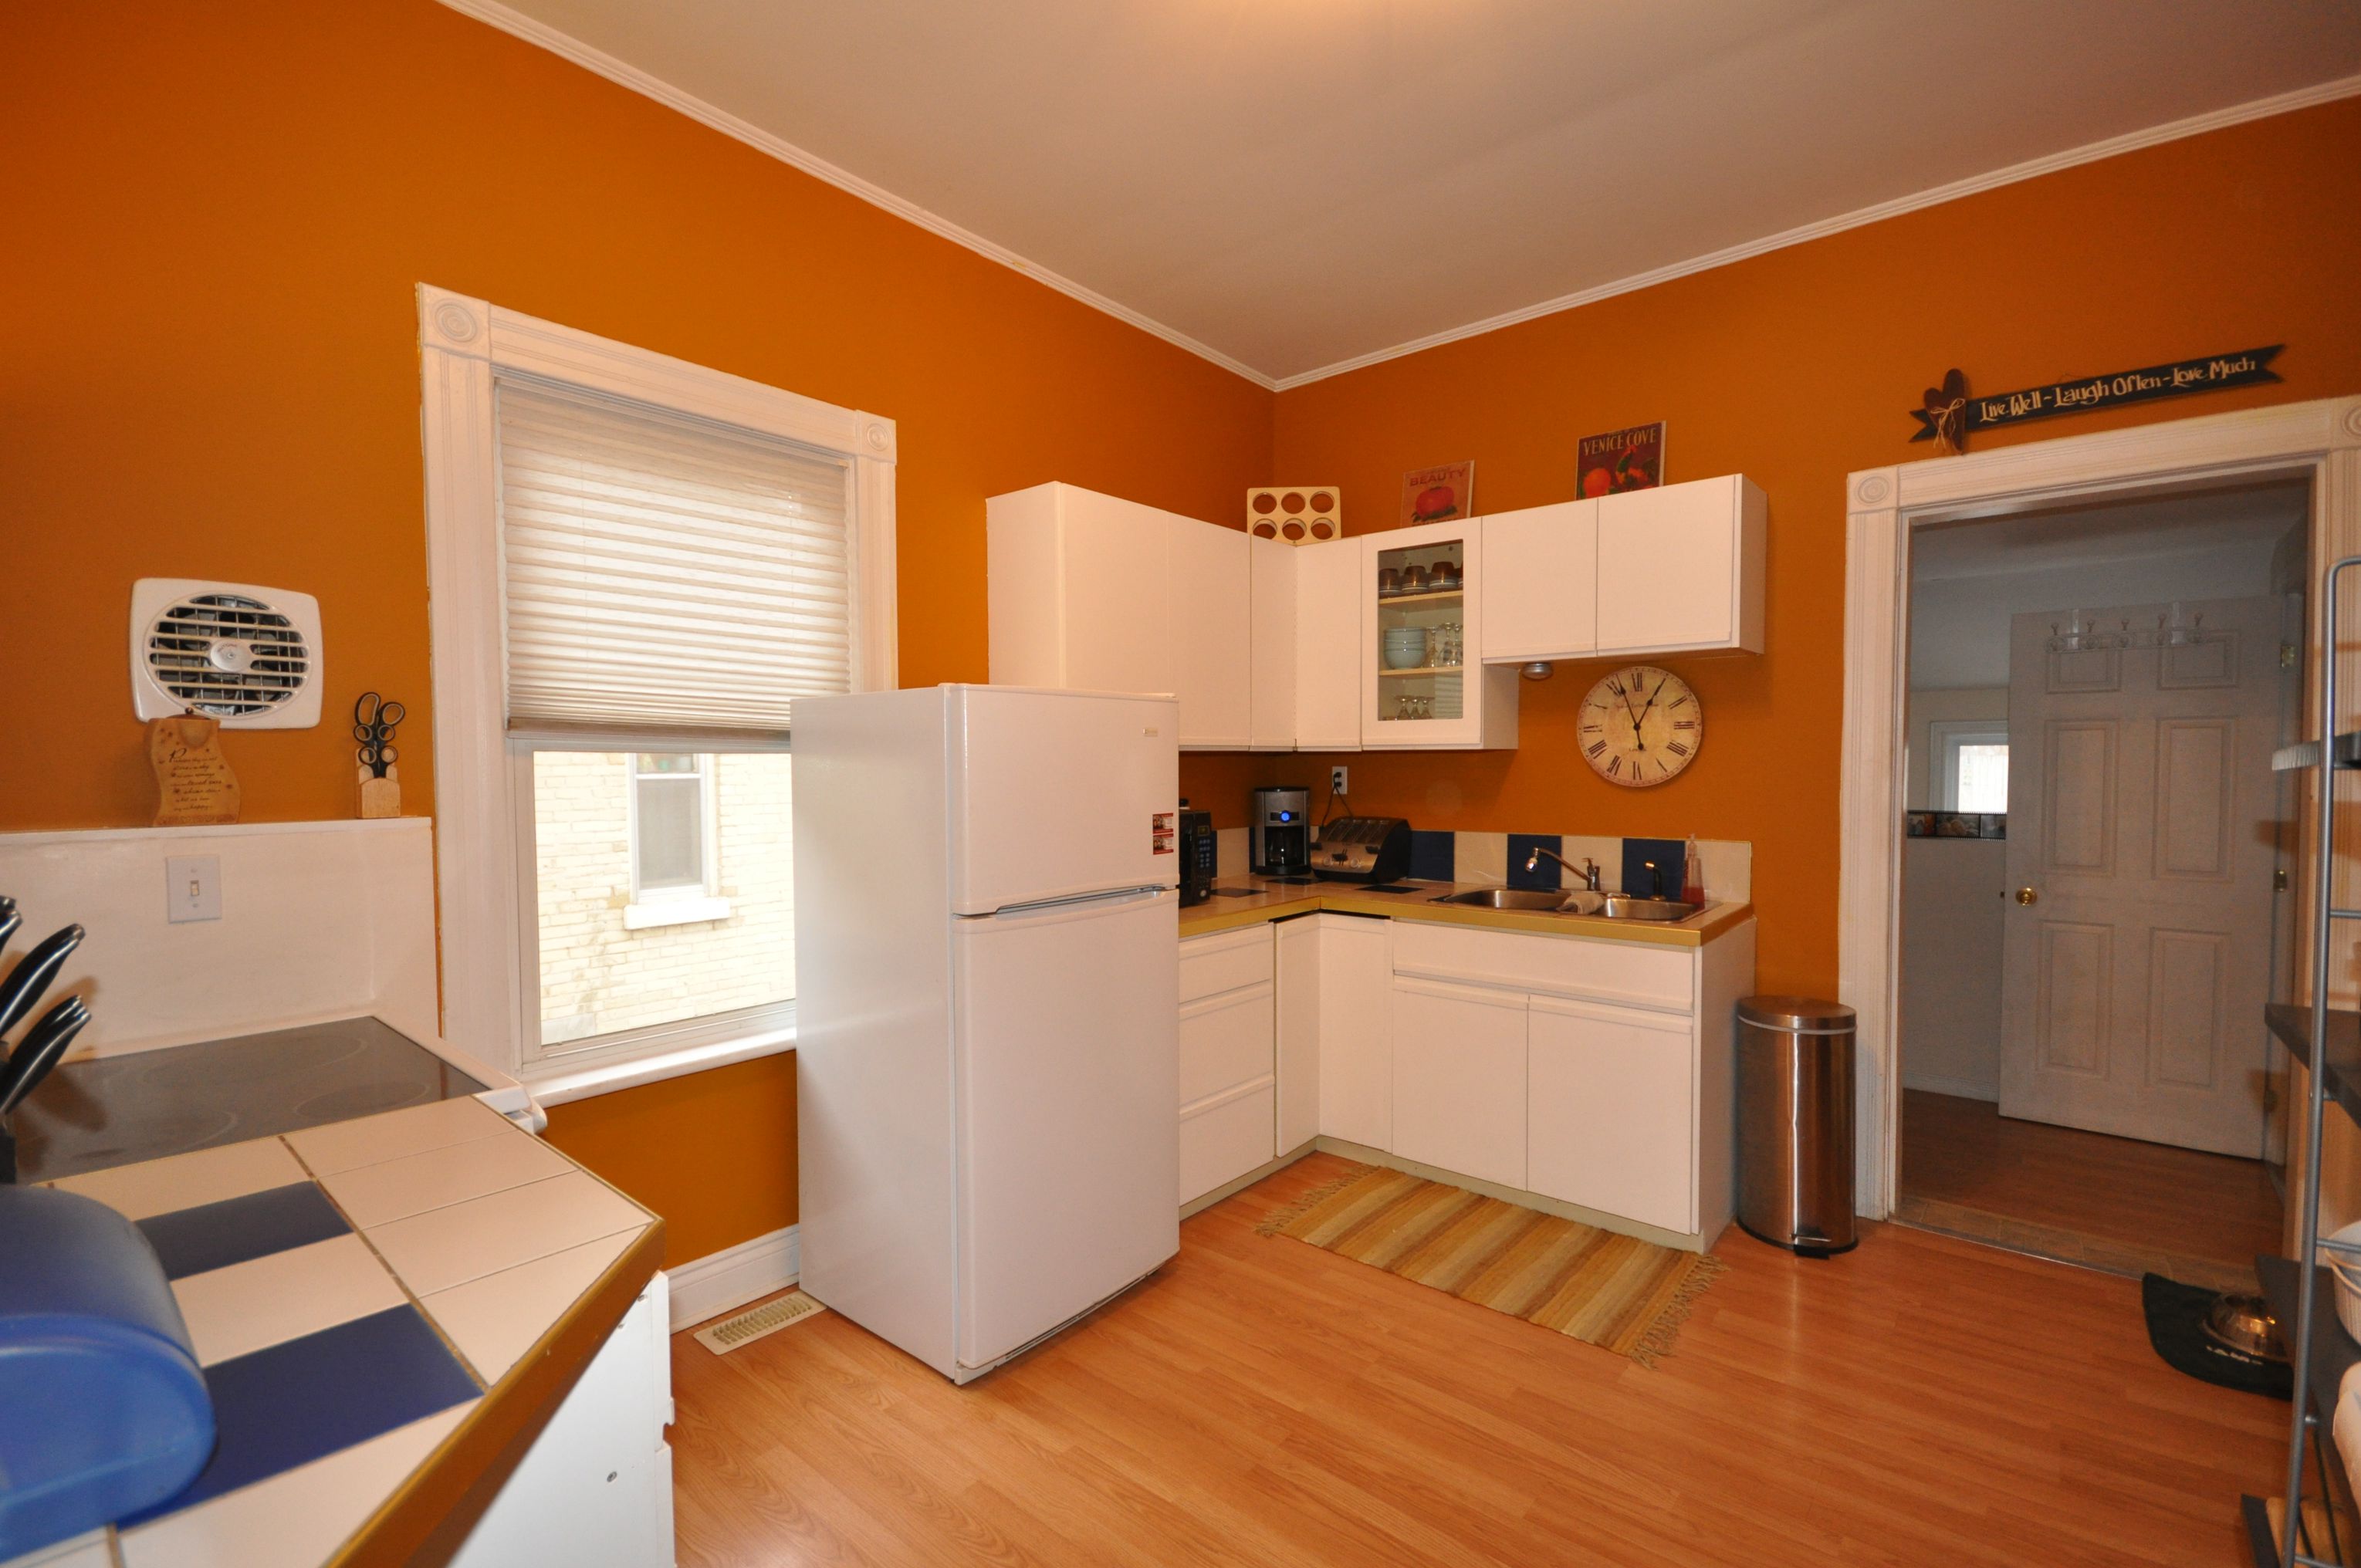 Bright spacious kitchen